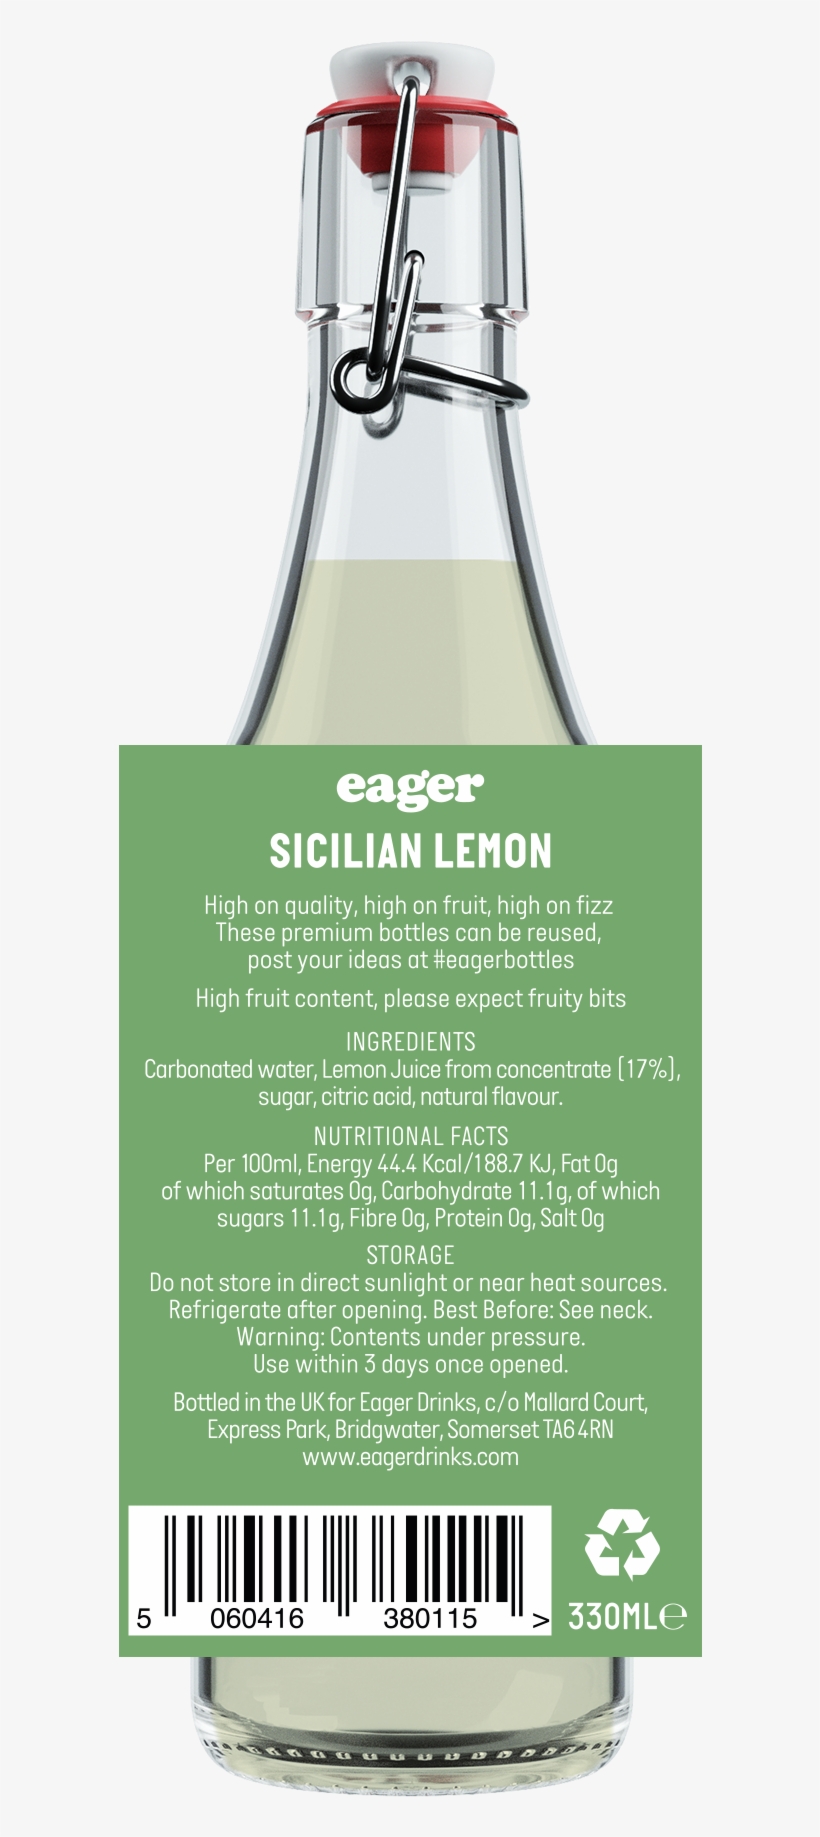 Sicilian Lemon - Domaine De Canton, transparent png #7617101